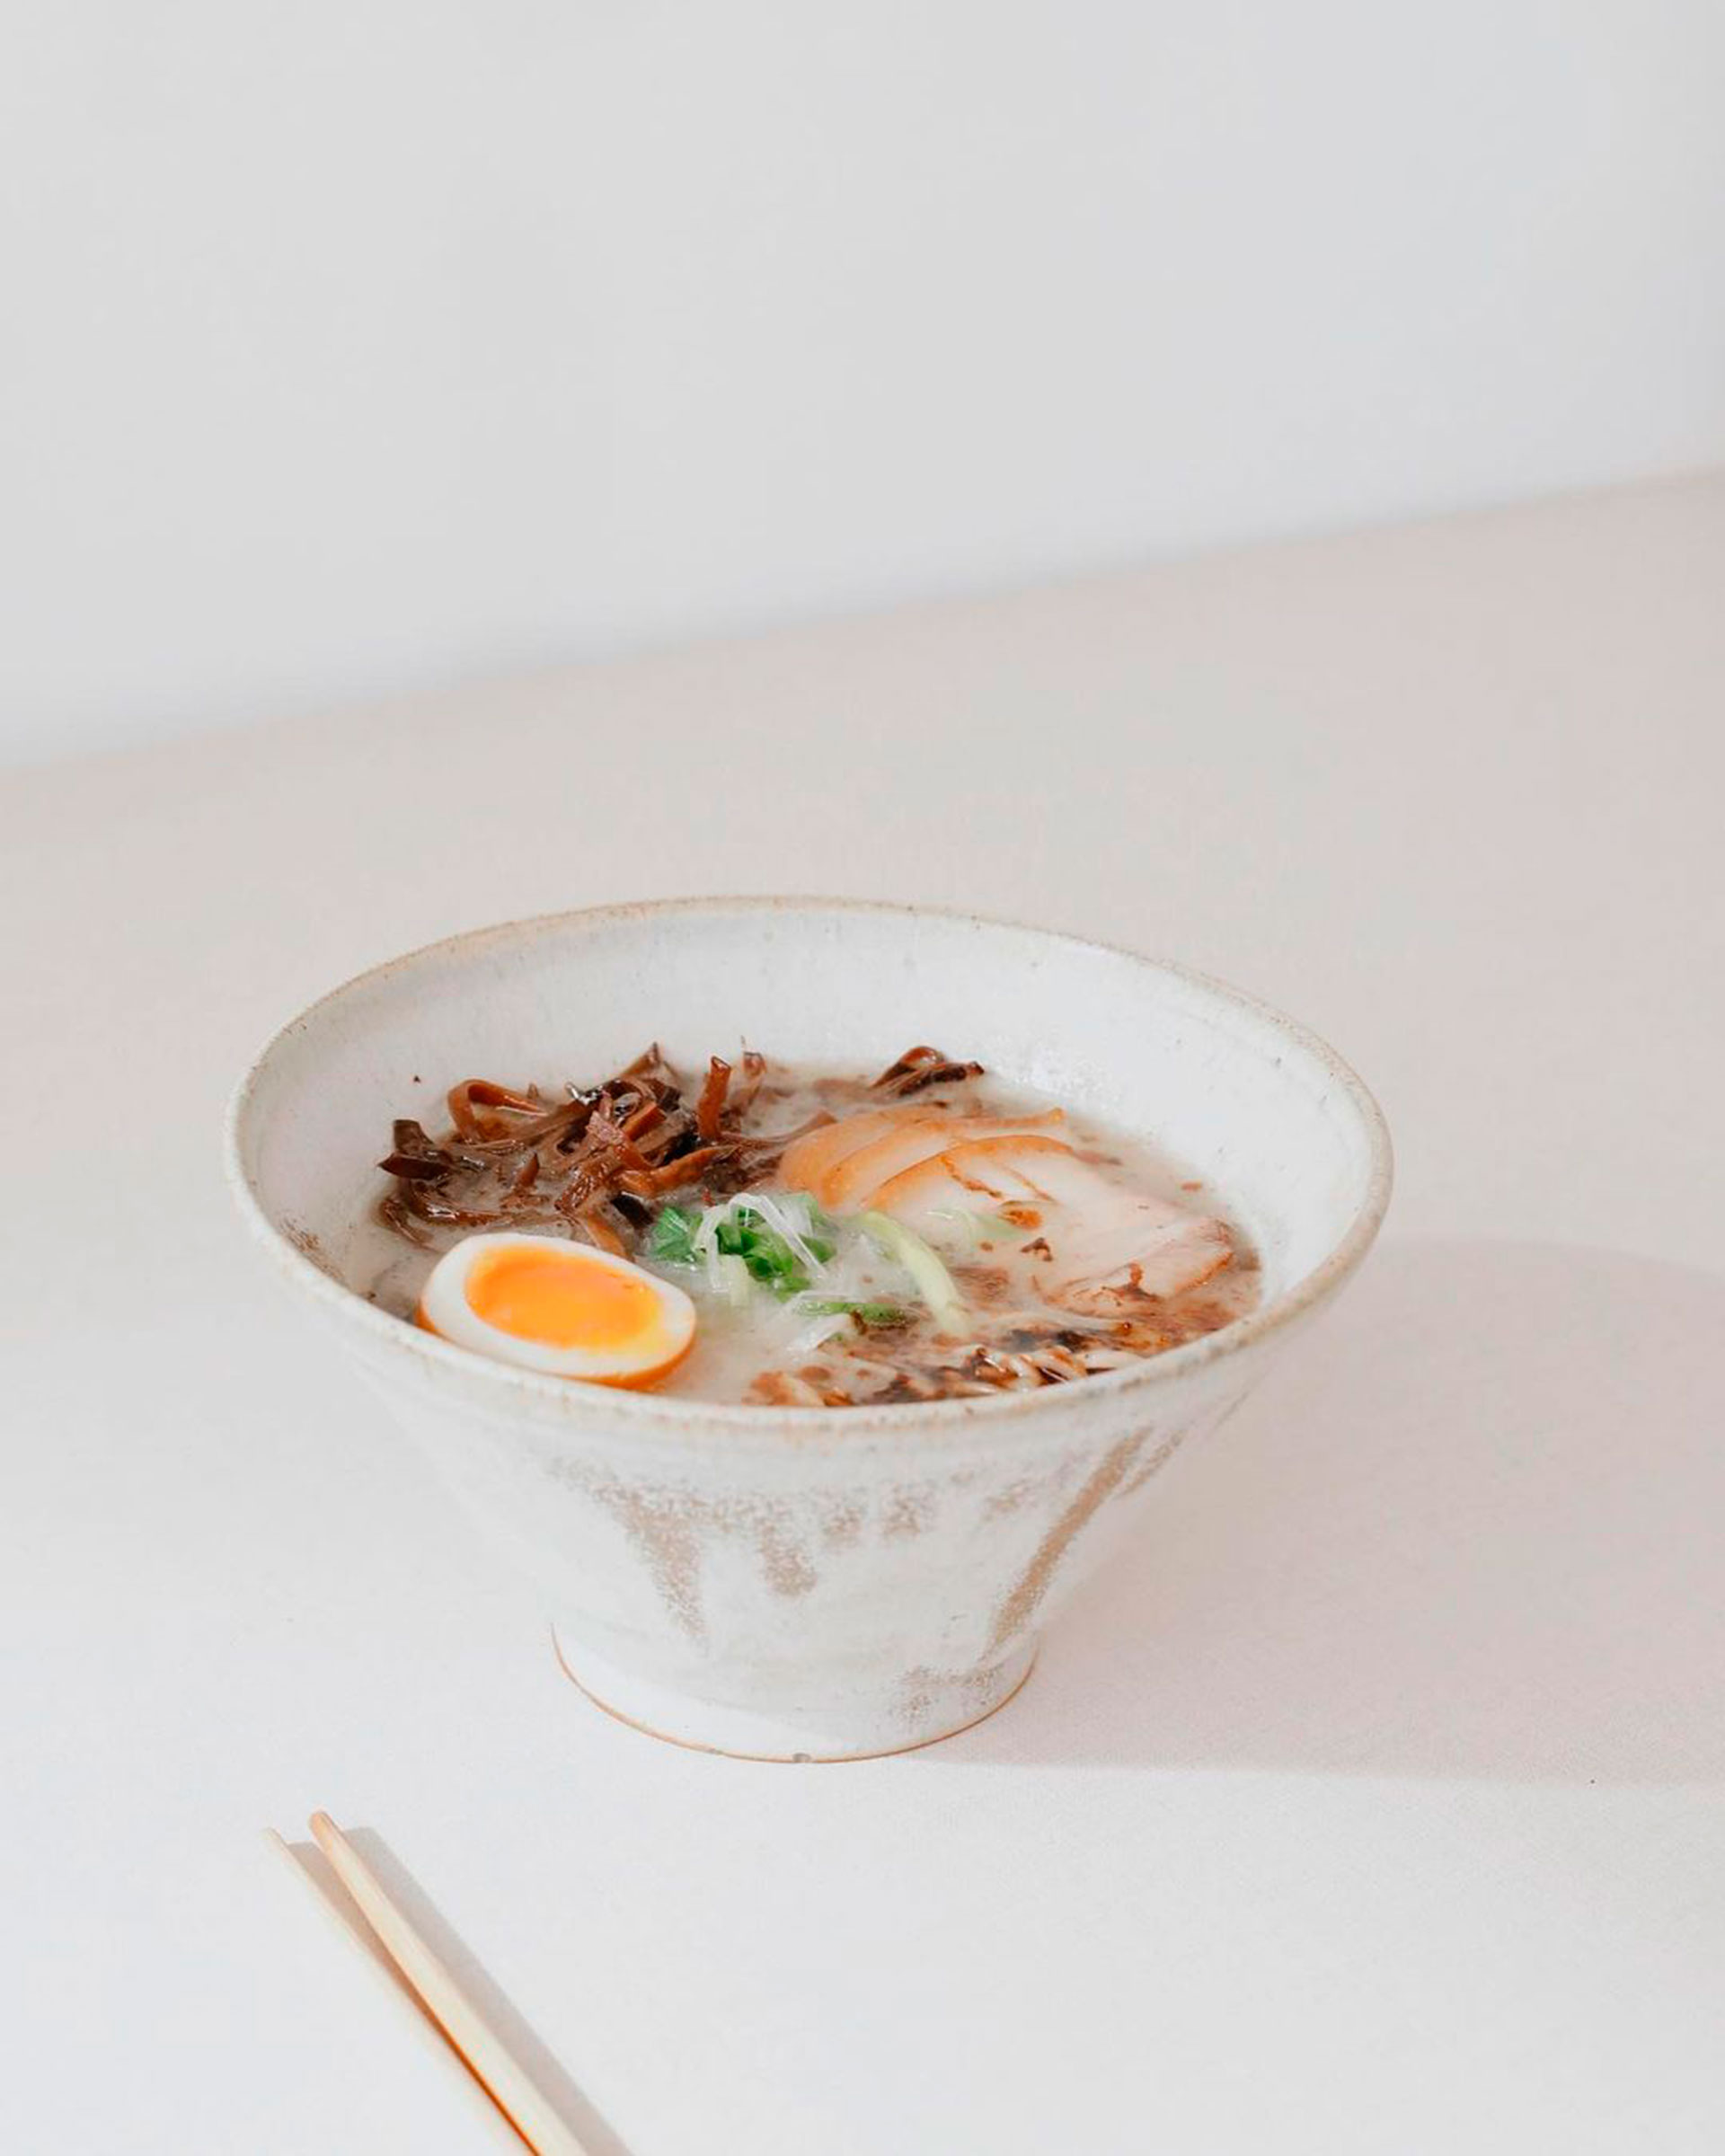 En Orei, el ramen se come con palillos descartables y el caldo se toma directo del bowl (Instagram/@buenospaladaires)